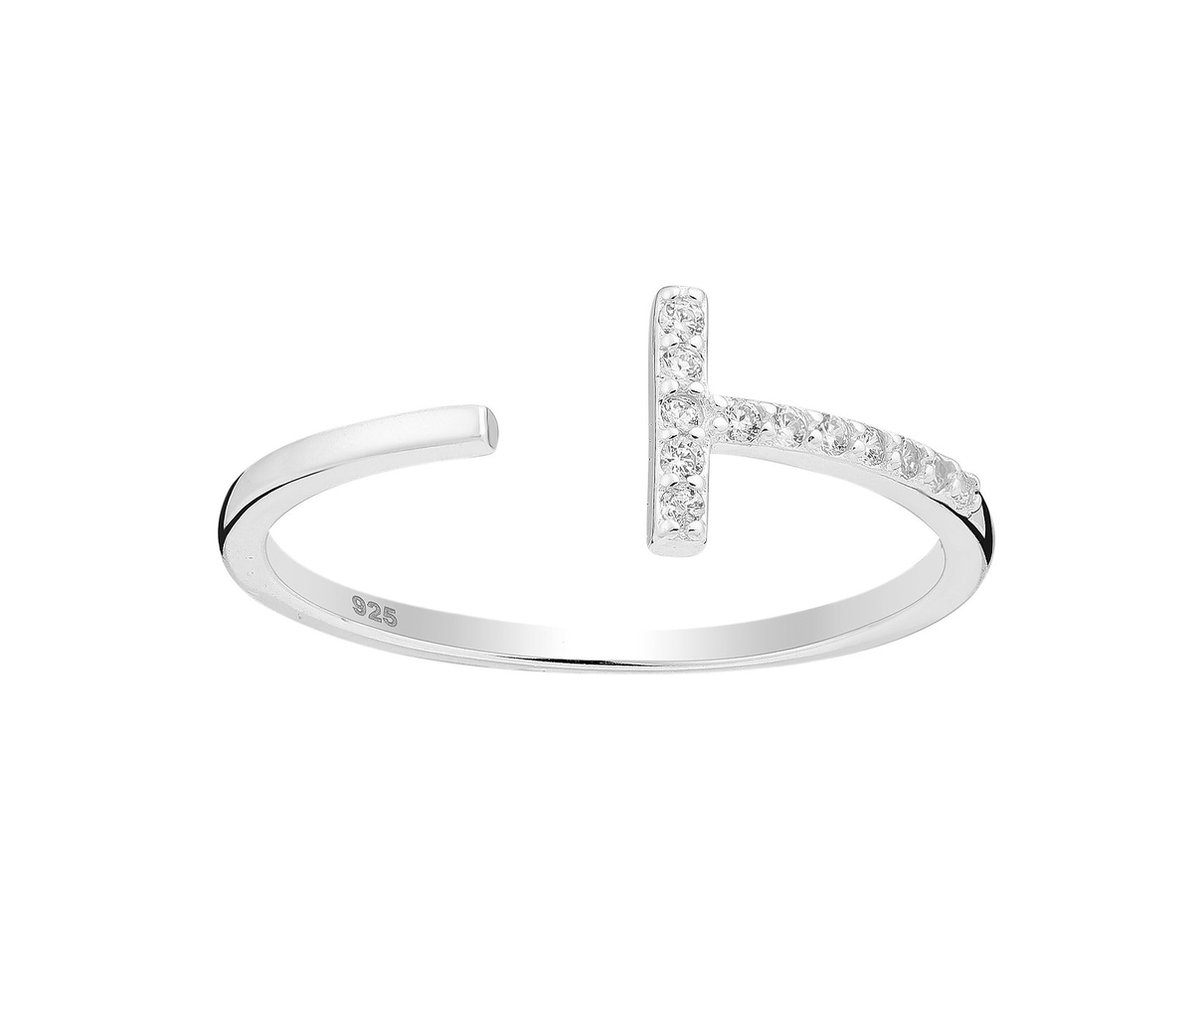 Ring dames verstelbaar zilver met kristallen - Zilveren multimaat ring 925 Sophie Siero Ligna - met geschenkverpakking